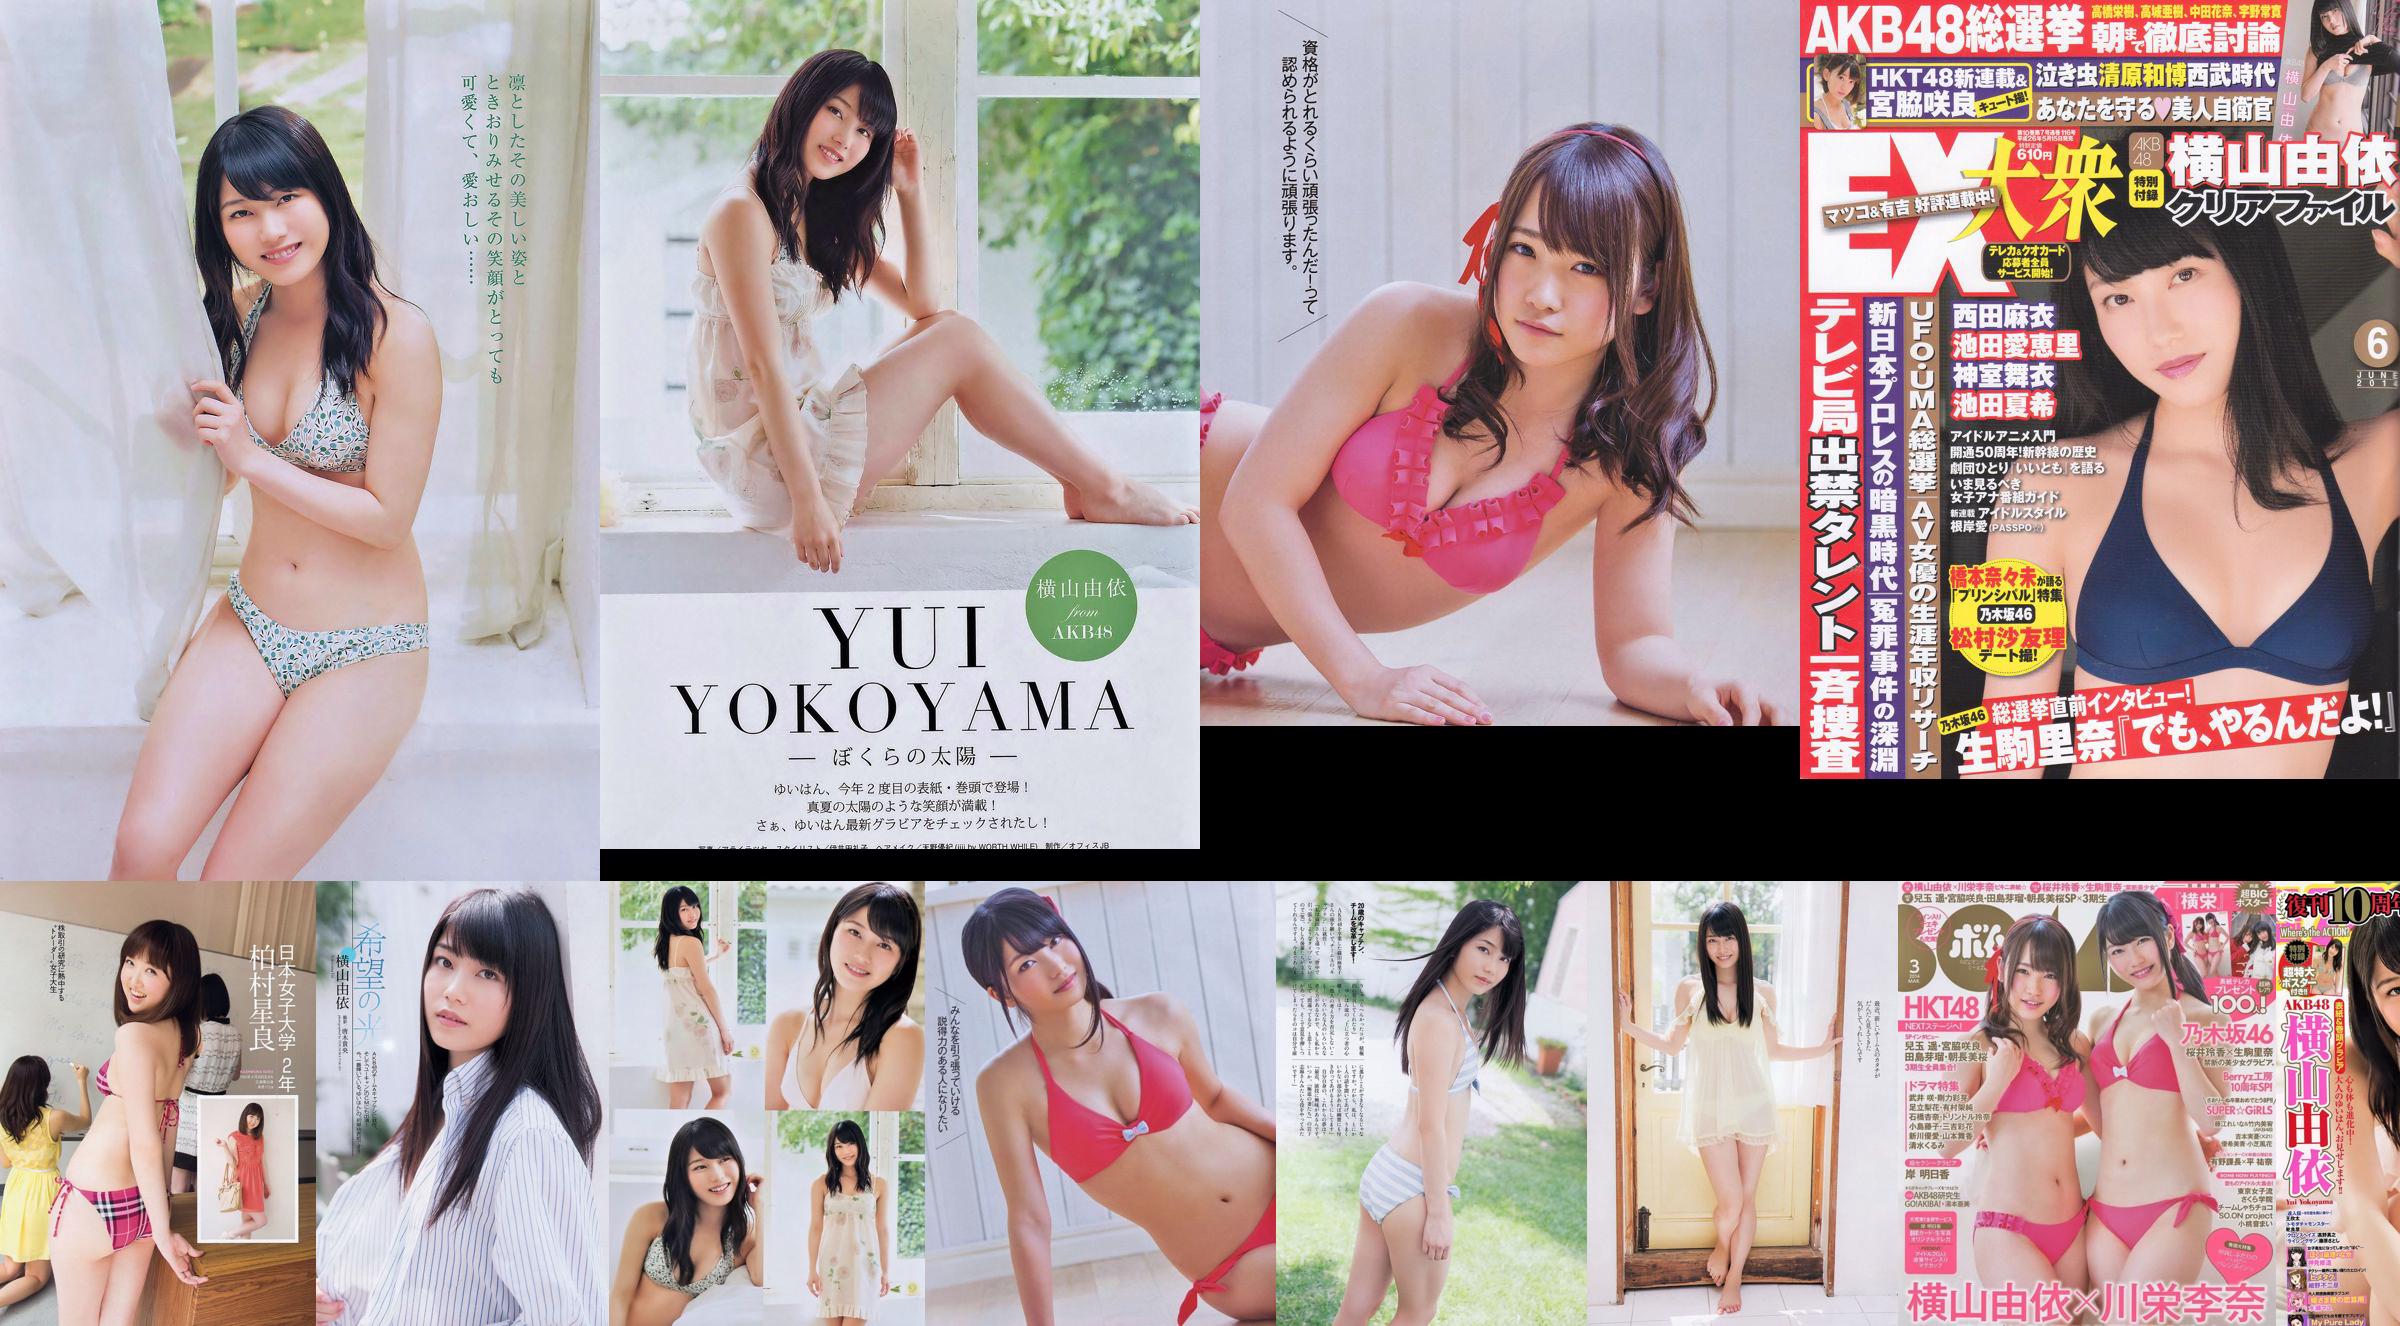 [Bomb Magazine] 2014 No.03 Yui Yokoyama Rina Kawaei Foto No.2d9625 Seite 1